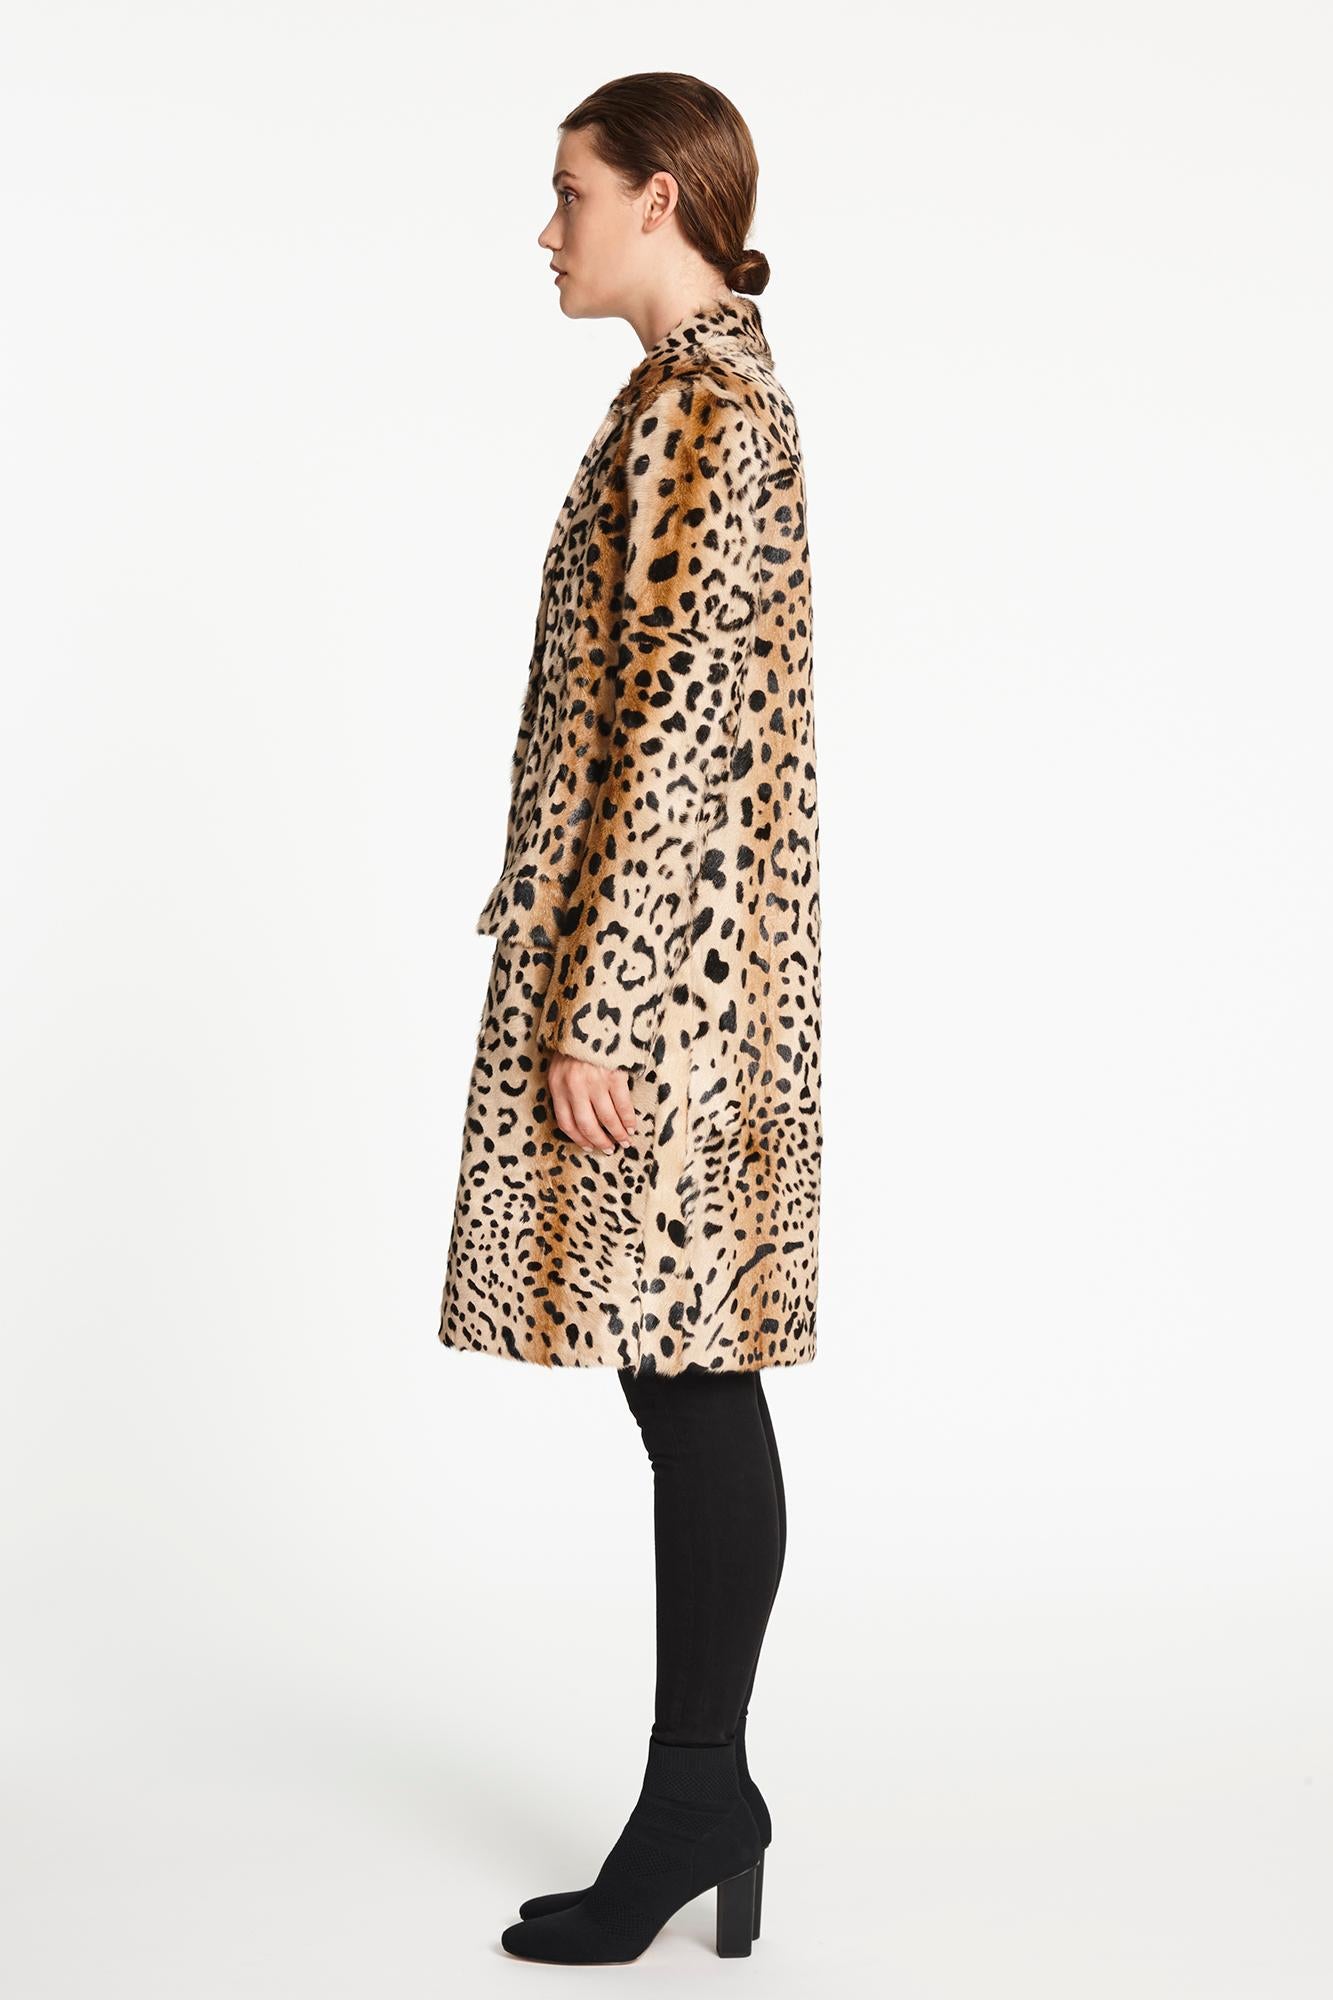 Verheyen London Leopard Print Coat in Natural Goat Hair Fur UK 12 - Brand New 2